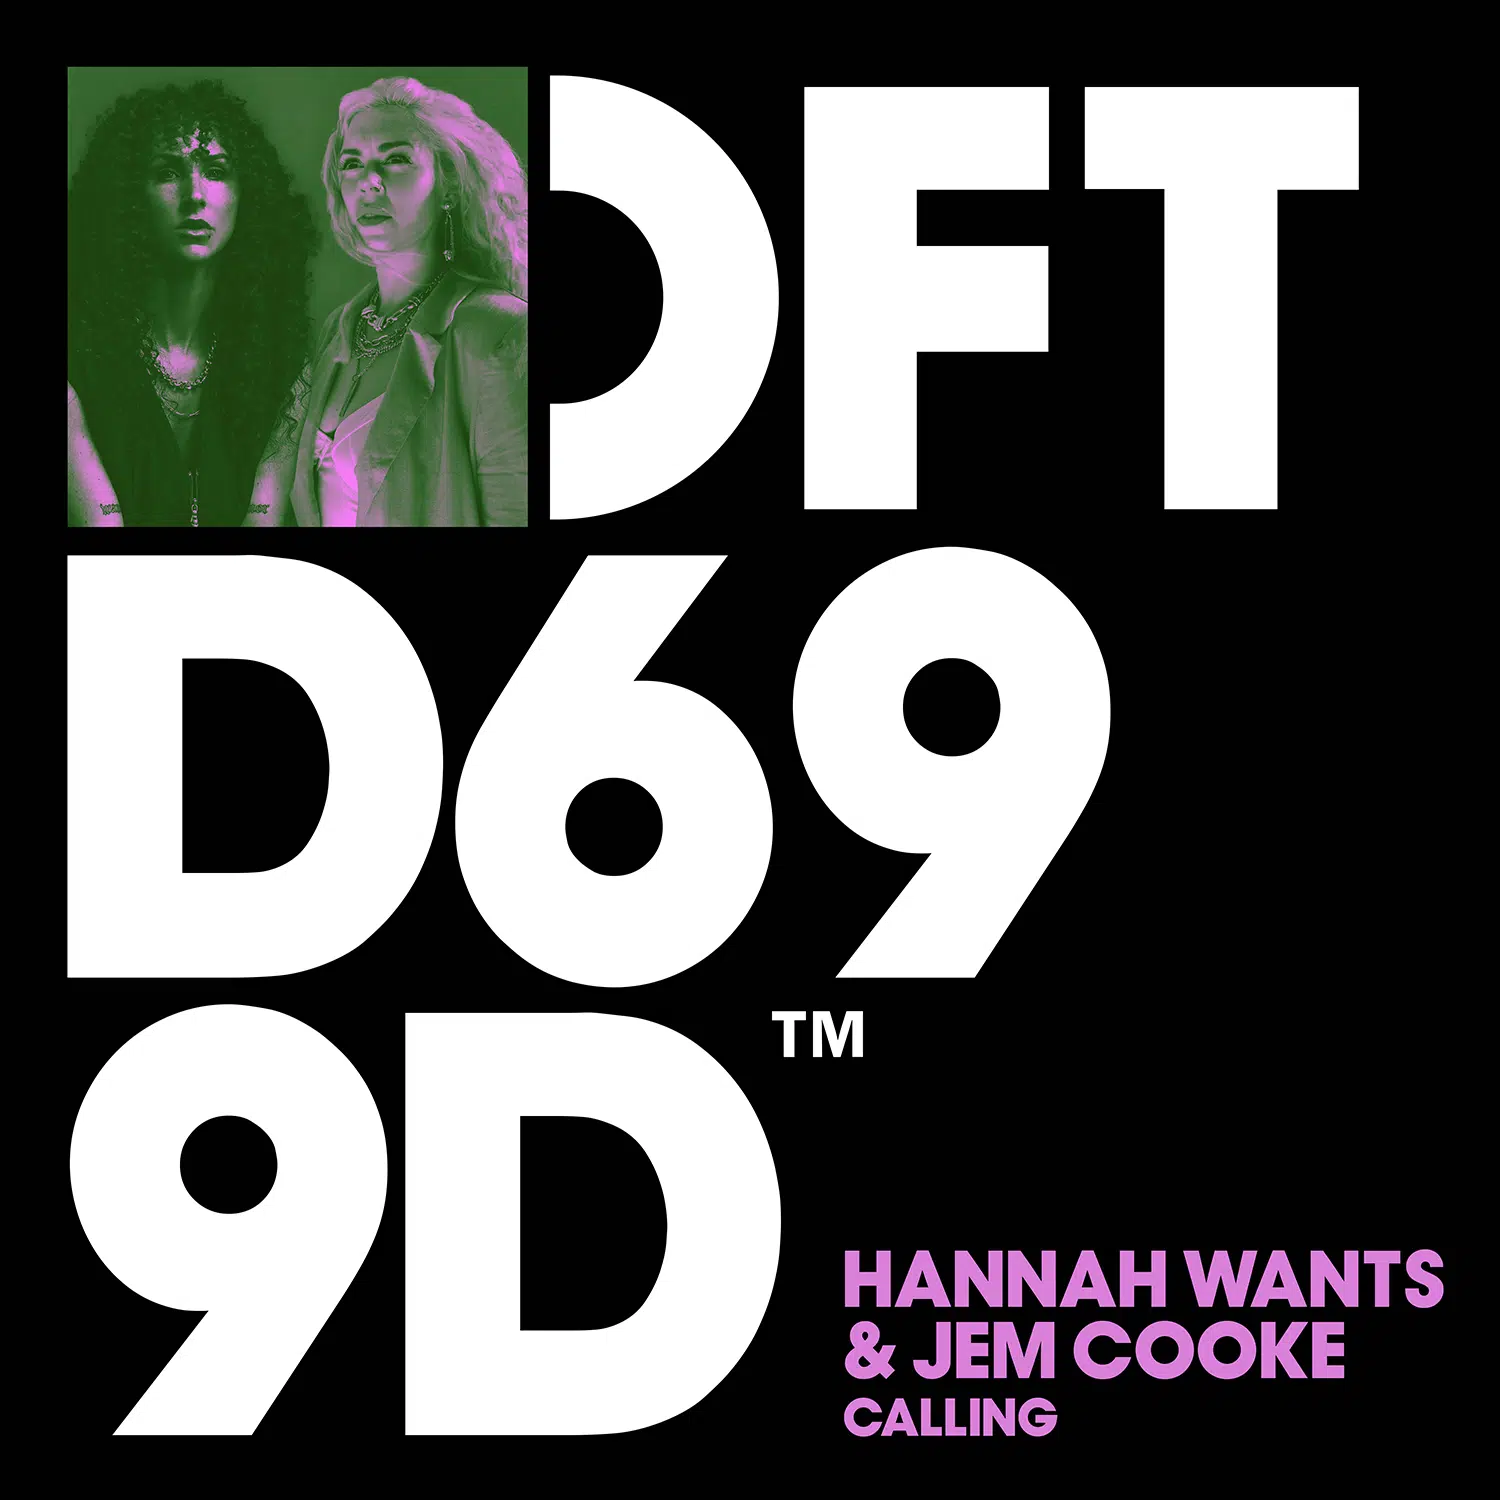 Hannah Wants & Jem Cooke “Calling”